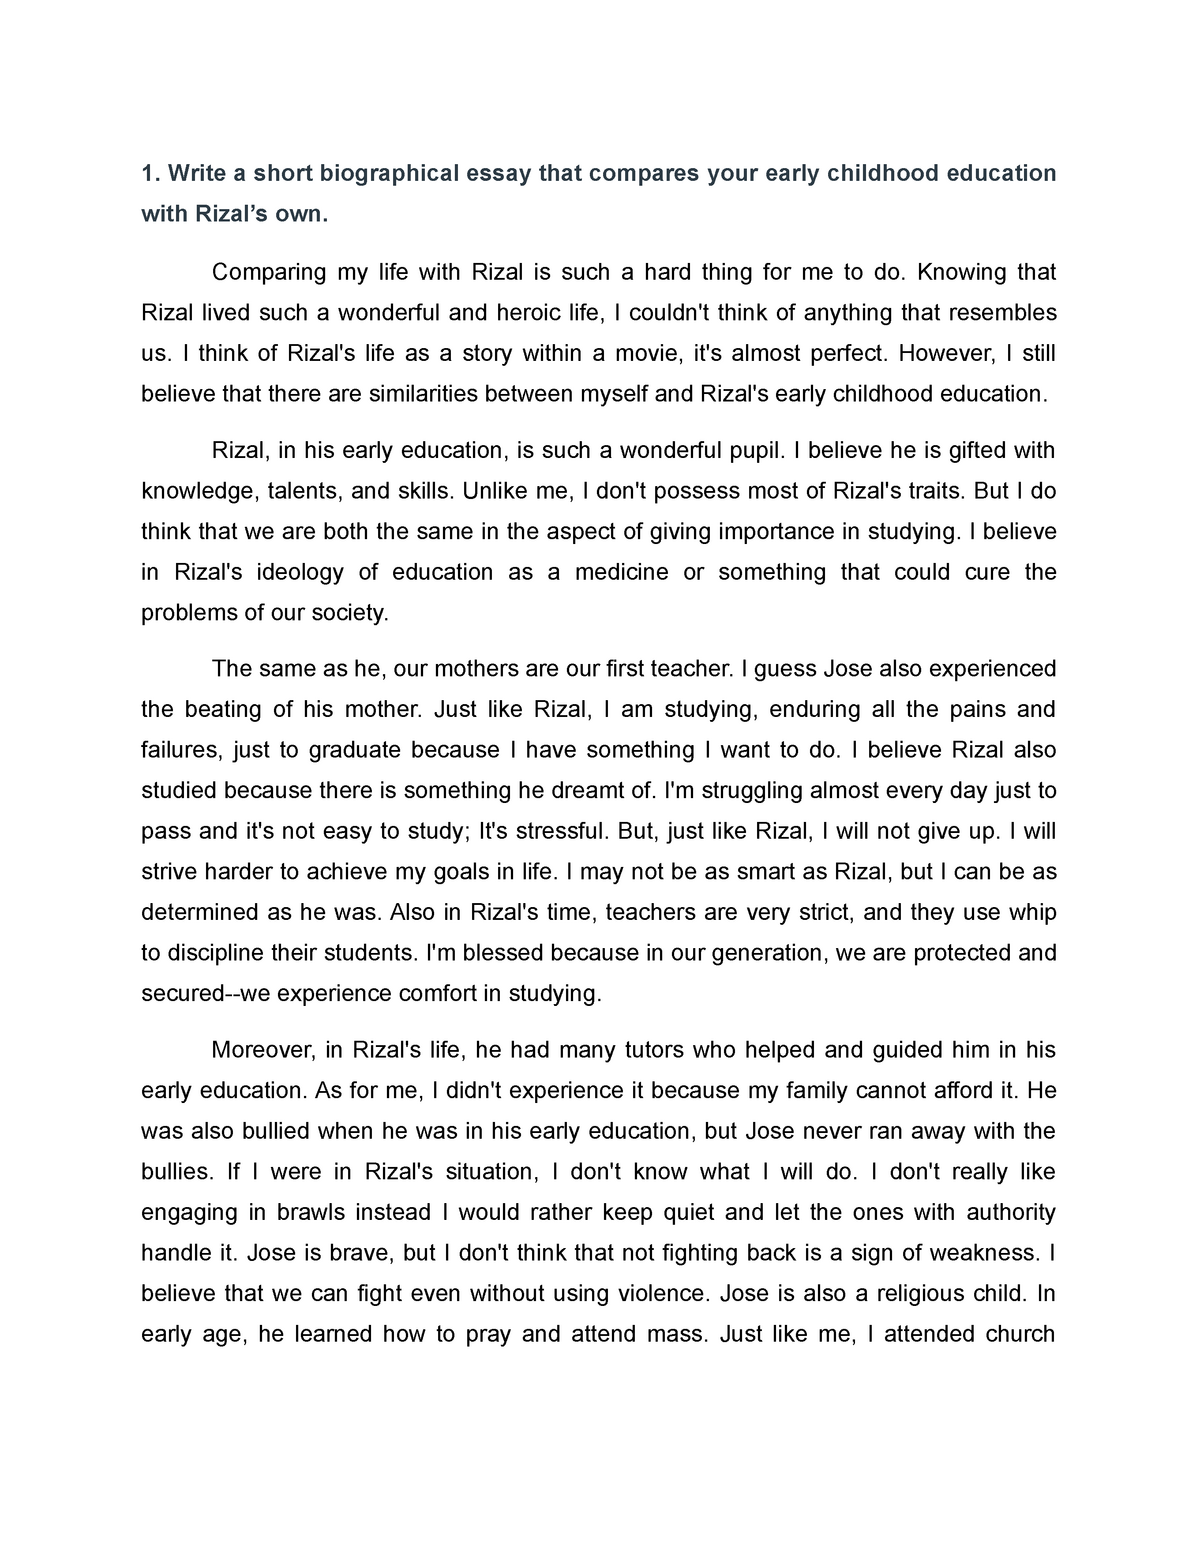 essay written by rizal